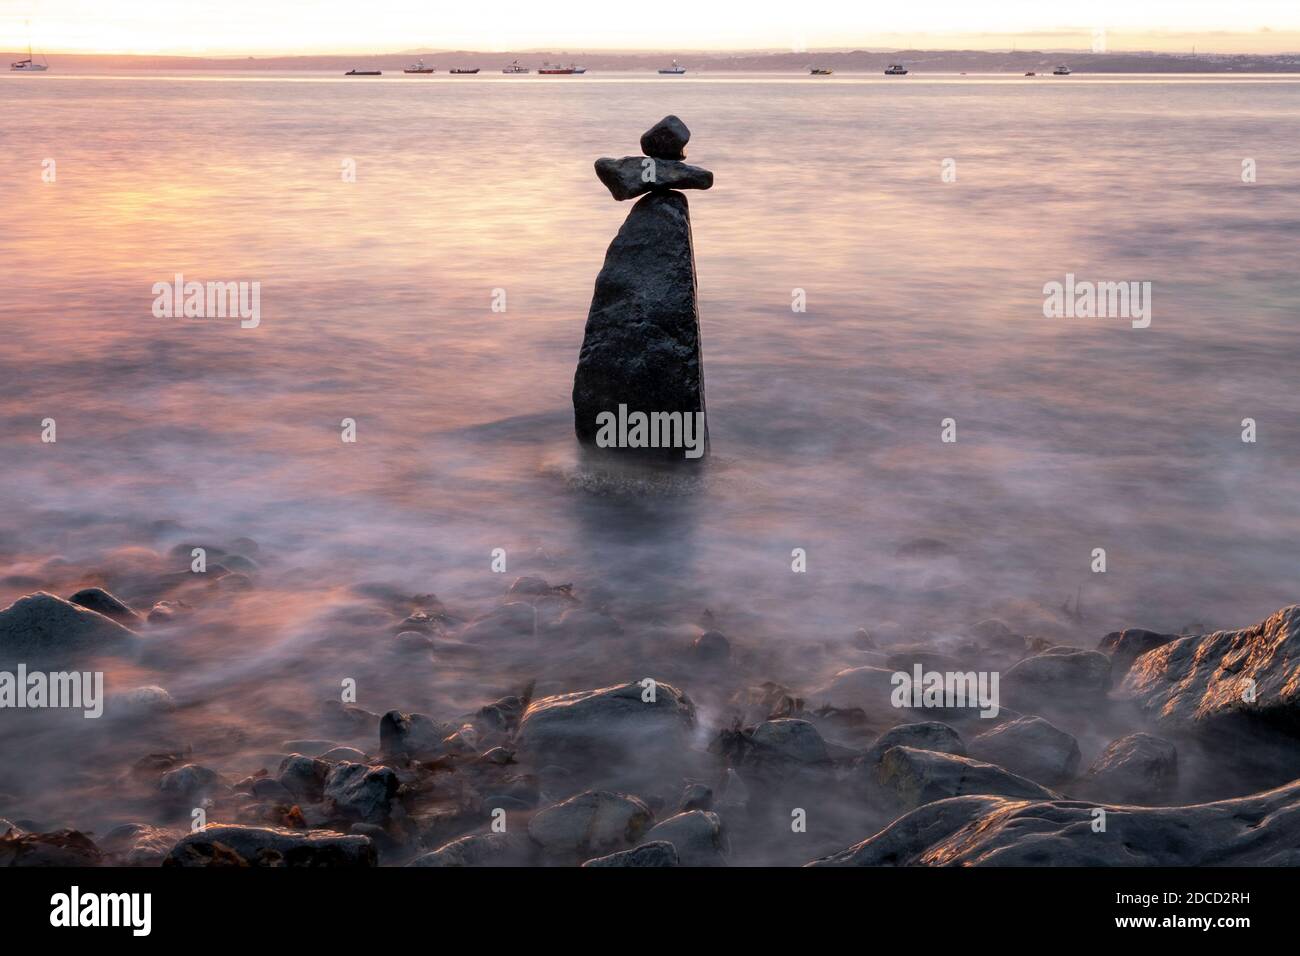 Balancierende Felsen in Form eines Kreuzes im Meer, Boote in St. Ives Bucht dahinter festgemacht Stockfoto